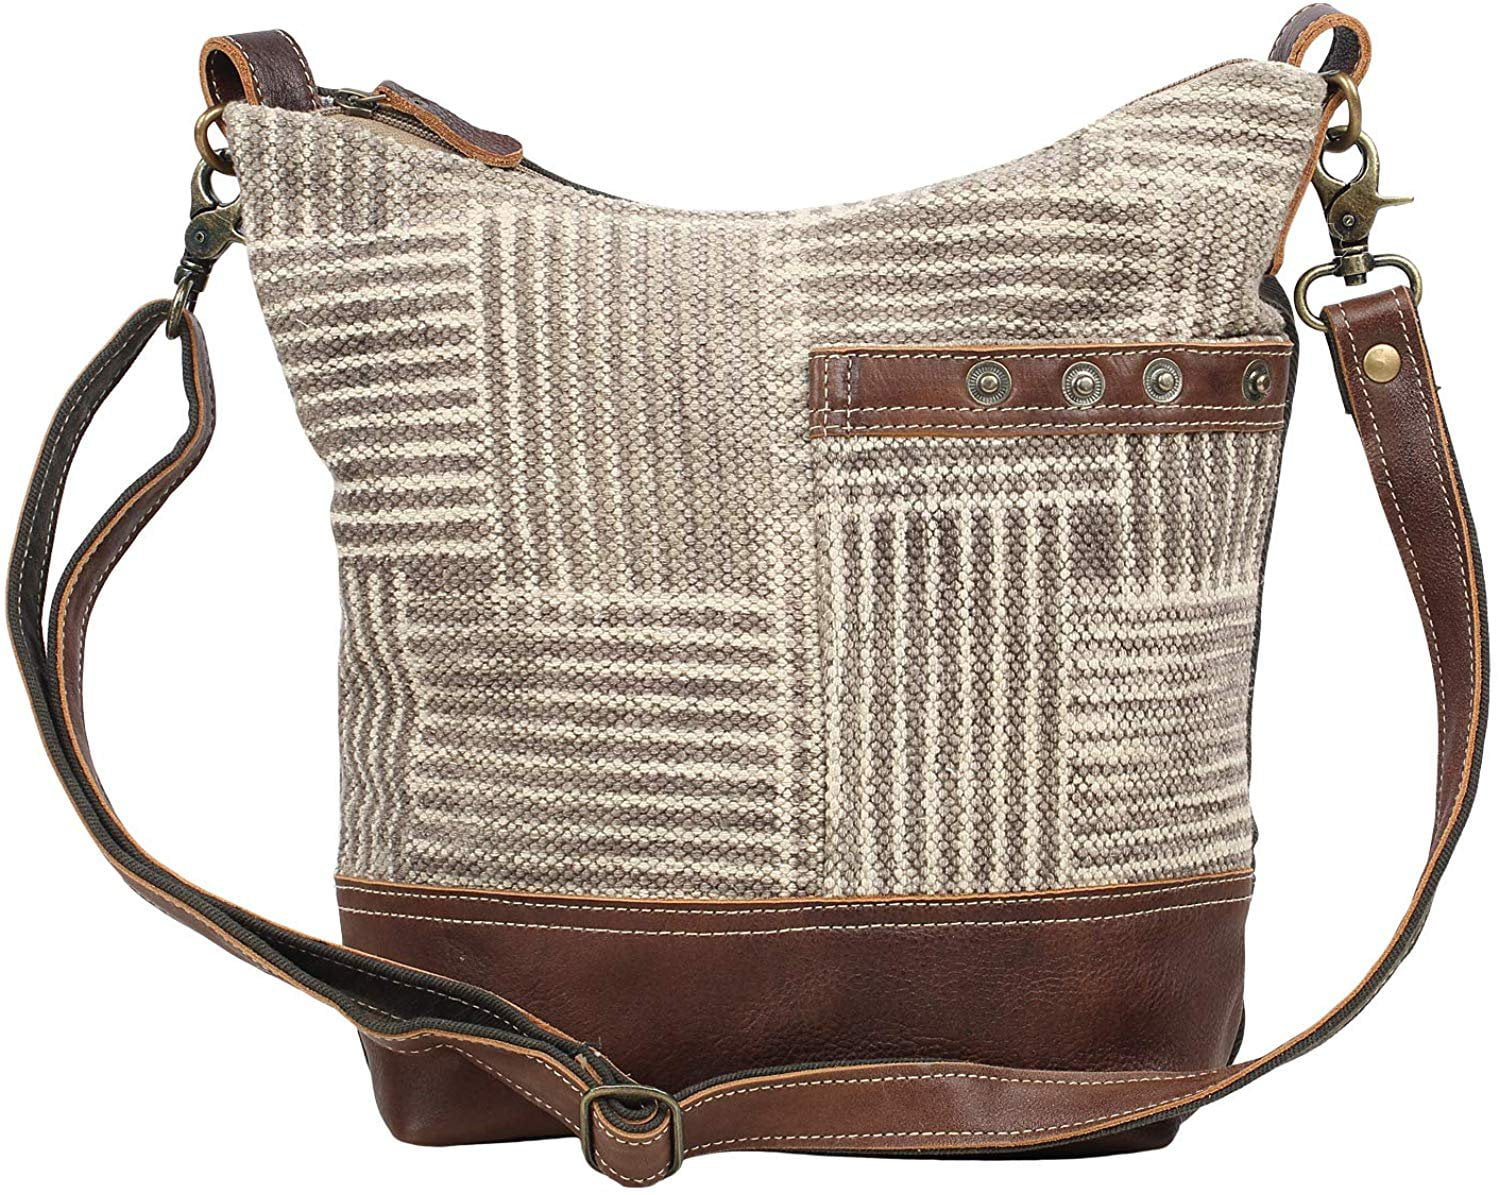 Myra Bag - Myra Bag Coffee Upcycled Canvas & Leather Shoulder Bag S